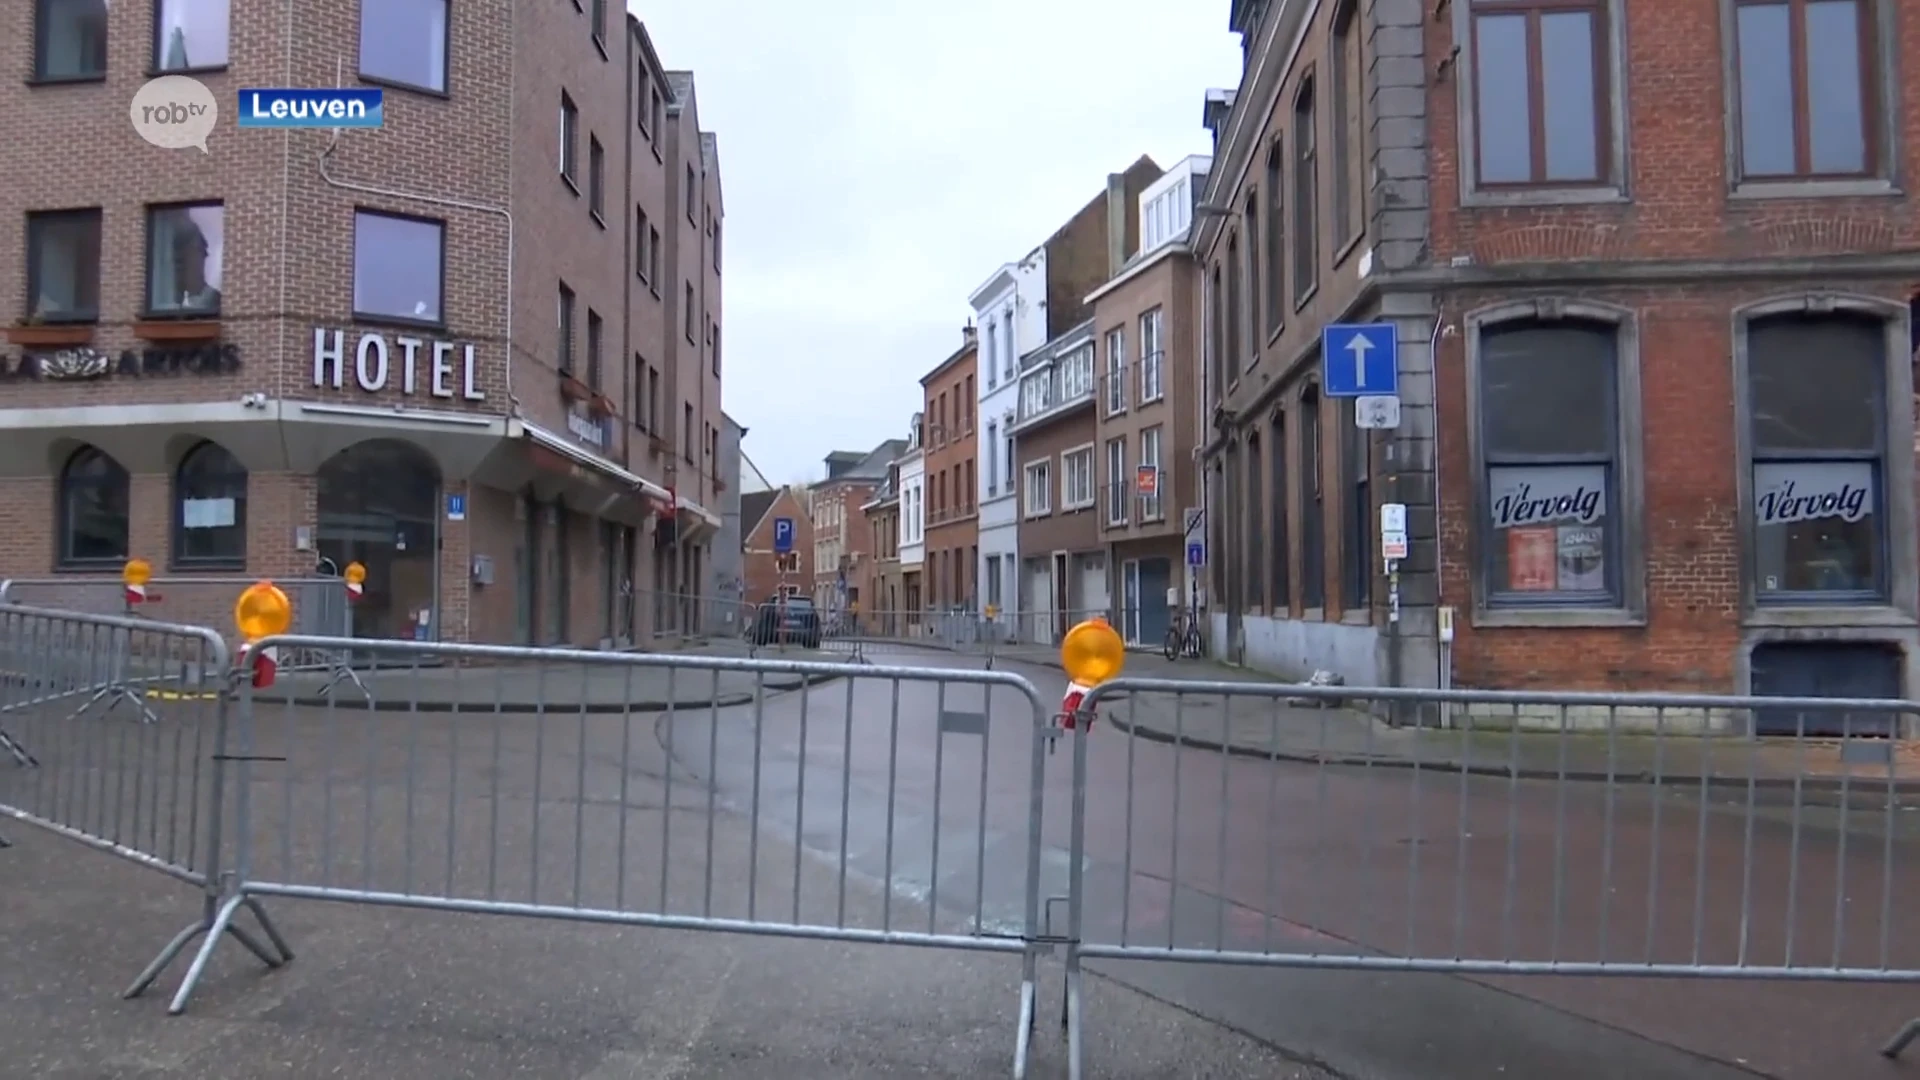 Schapenstraat in Leuven afgesloten door afbrokkelende stenen bij voormalig Café 't Vervolg